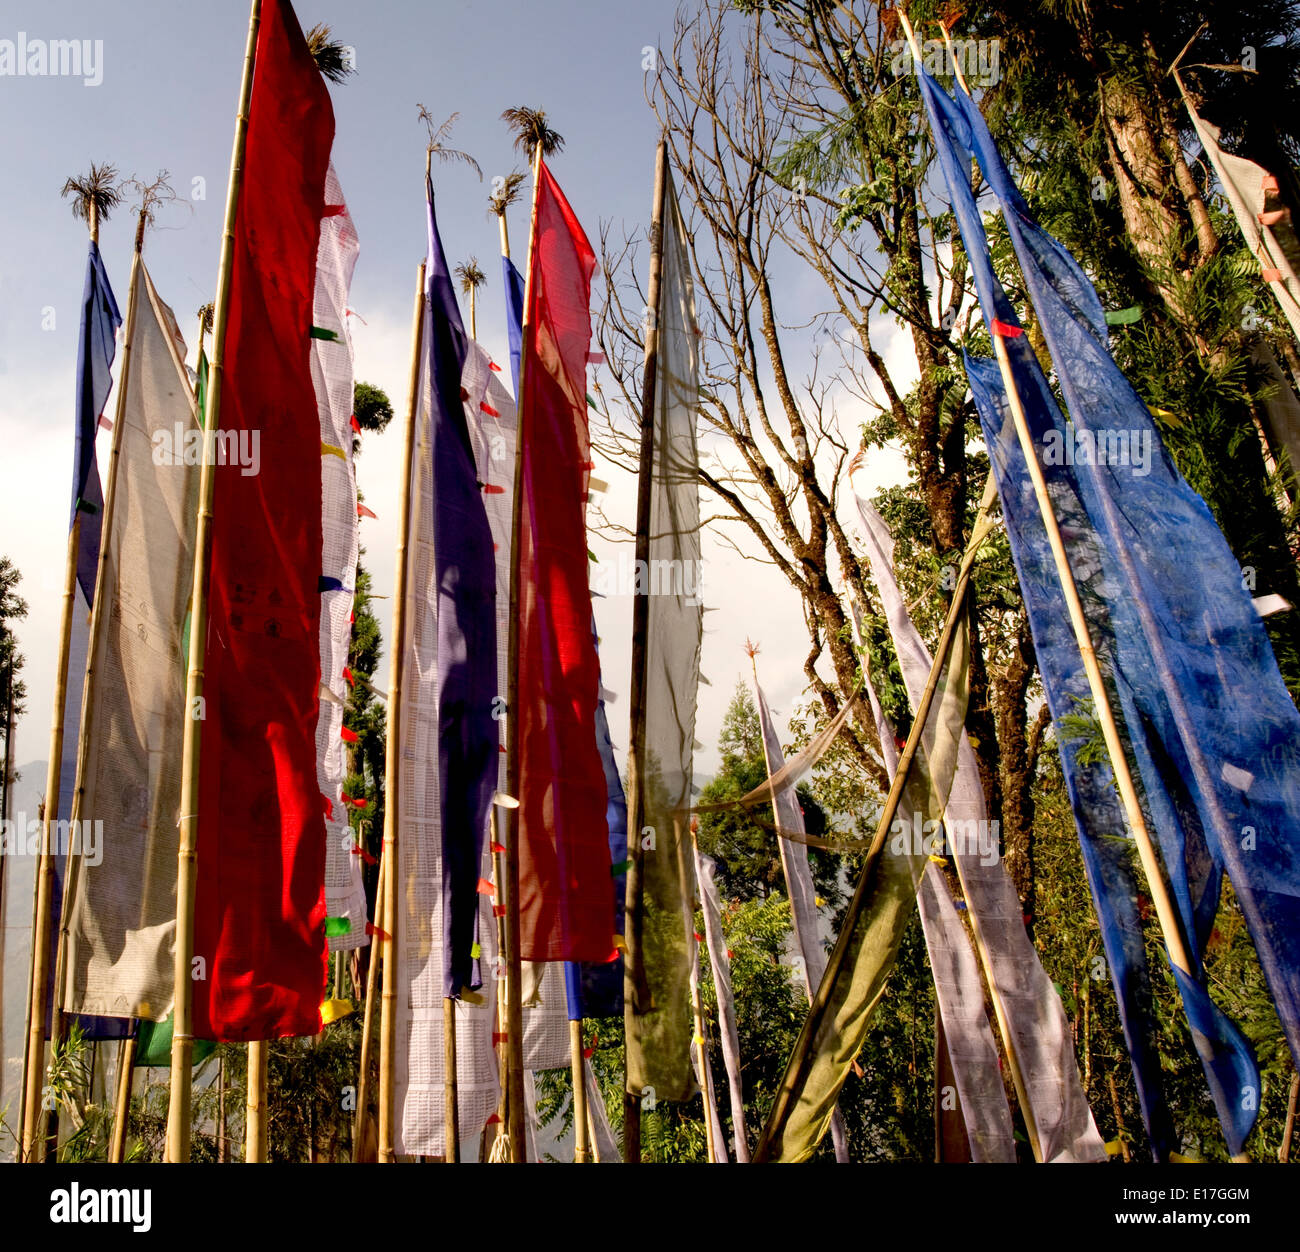 Les drapeaux de prières dans un monastère bouddhiste, Sikkim, Inde Banque D'Images